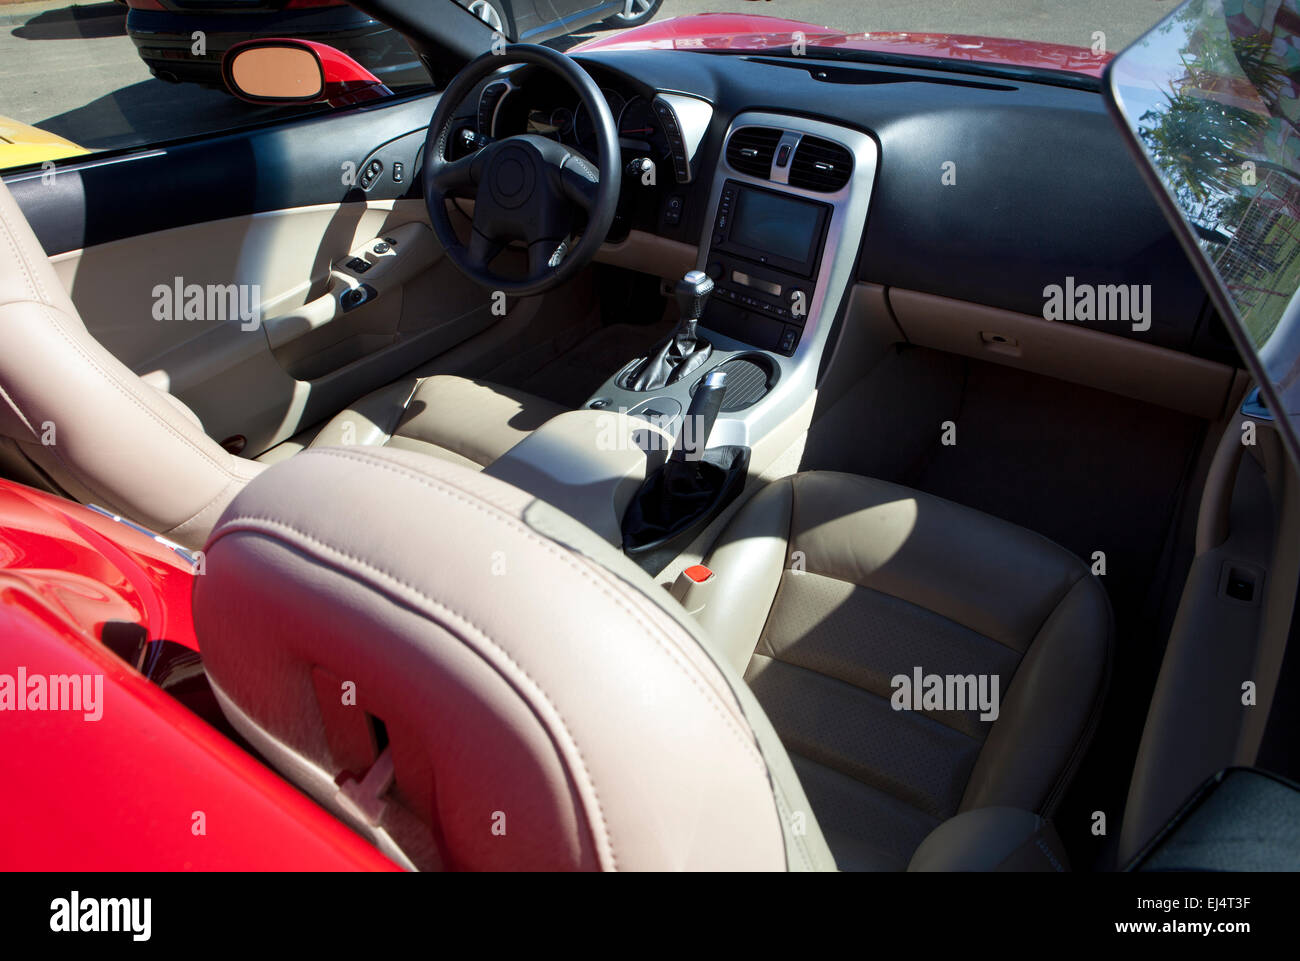 https://c8.alamy.com/compfr/ej4t3f/sports-voiture-decapotable-rouge-de-l-interieur-detail-d-une-voiture-de-luxe-avec-salon-en-cuir-clair-ej4t3f.jpg